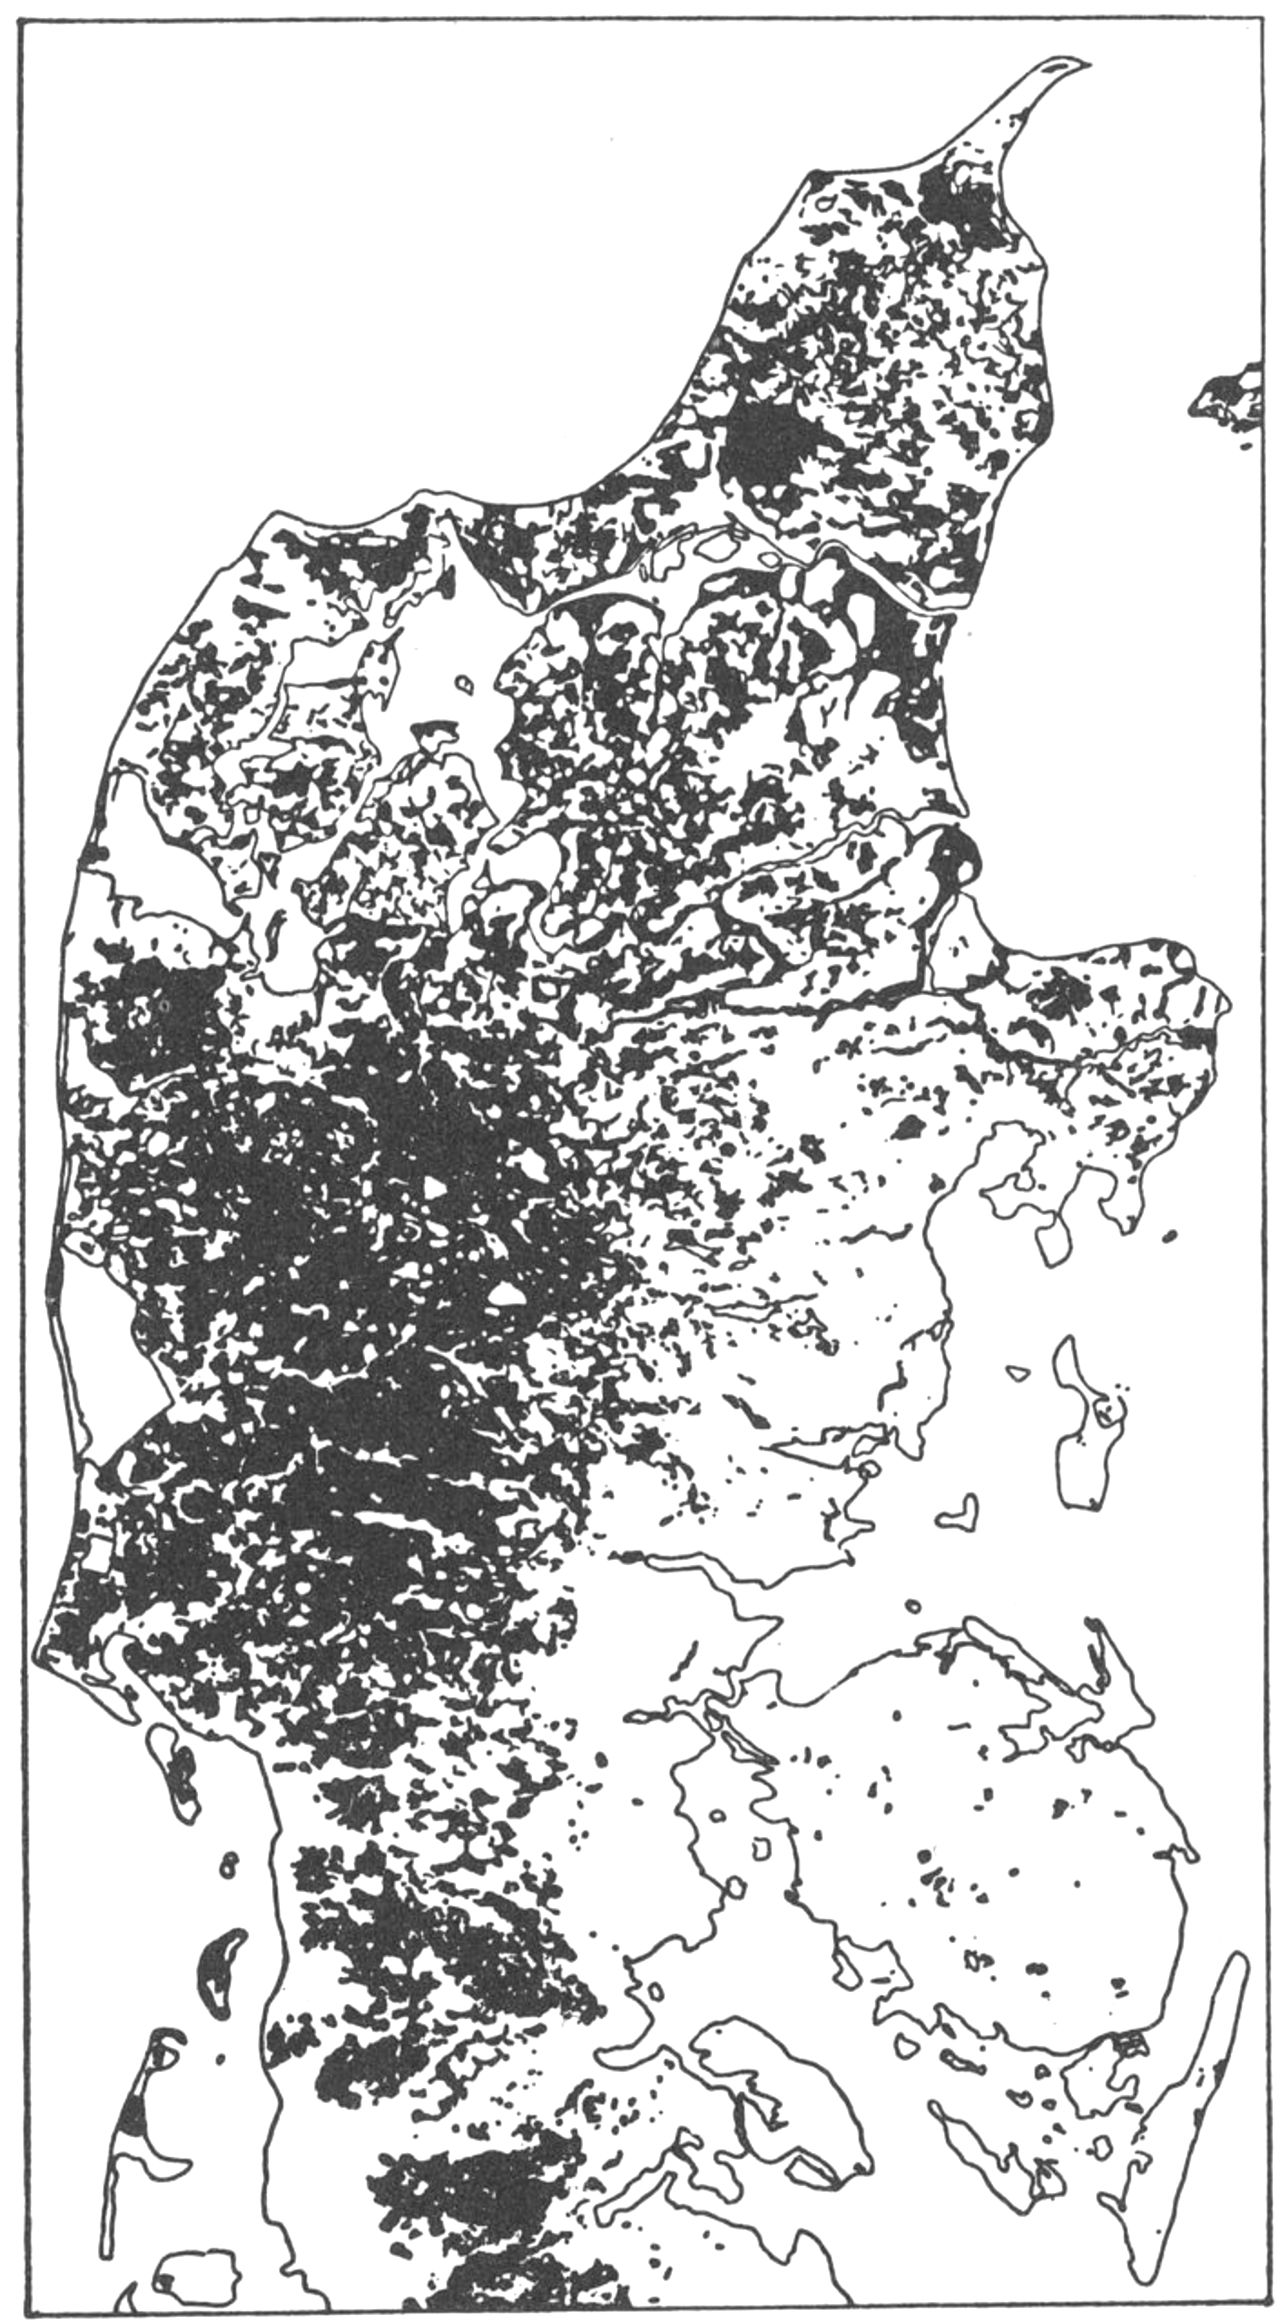 (Kort). Hedens udbredelse omkr. år 1800.En sammenligning med landskabskortet (s. 33) viser, at hedelyngen omkr. 1800 i Vestjylland bredte sig over såvel hedesletter som bakkeøer og gammelt klitterræn. Den udbredte hedesignatur brydes dels af de hvide striber, der angiver ådalenes gamle dyrkningsarealer, dels af prikker, som viser 1700t.s dyrkningsenklaver i lyngørkenen. Langs vadehavskysten mod sv. danner marsken en bred bræmme af kulturland, som lyngen ikke har kunnet erobre. I Østjyllands og i de vestlige Limfjordsegnes unge morænelandskaber træffes lyngen kun på steder, der ikke kan opdyrkes: Stejlskrænter, vandlidende lavninger olgn. På Den nørrejyske Ø er heden udbredt over såvel det gamle klitterræn som det marine forland, mest sammenhængende på de store højmoseflader Store og Lille Vildmose.